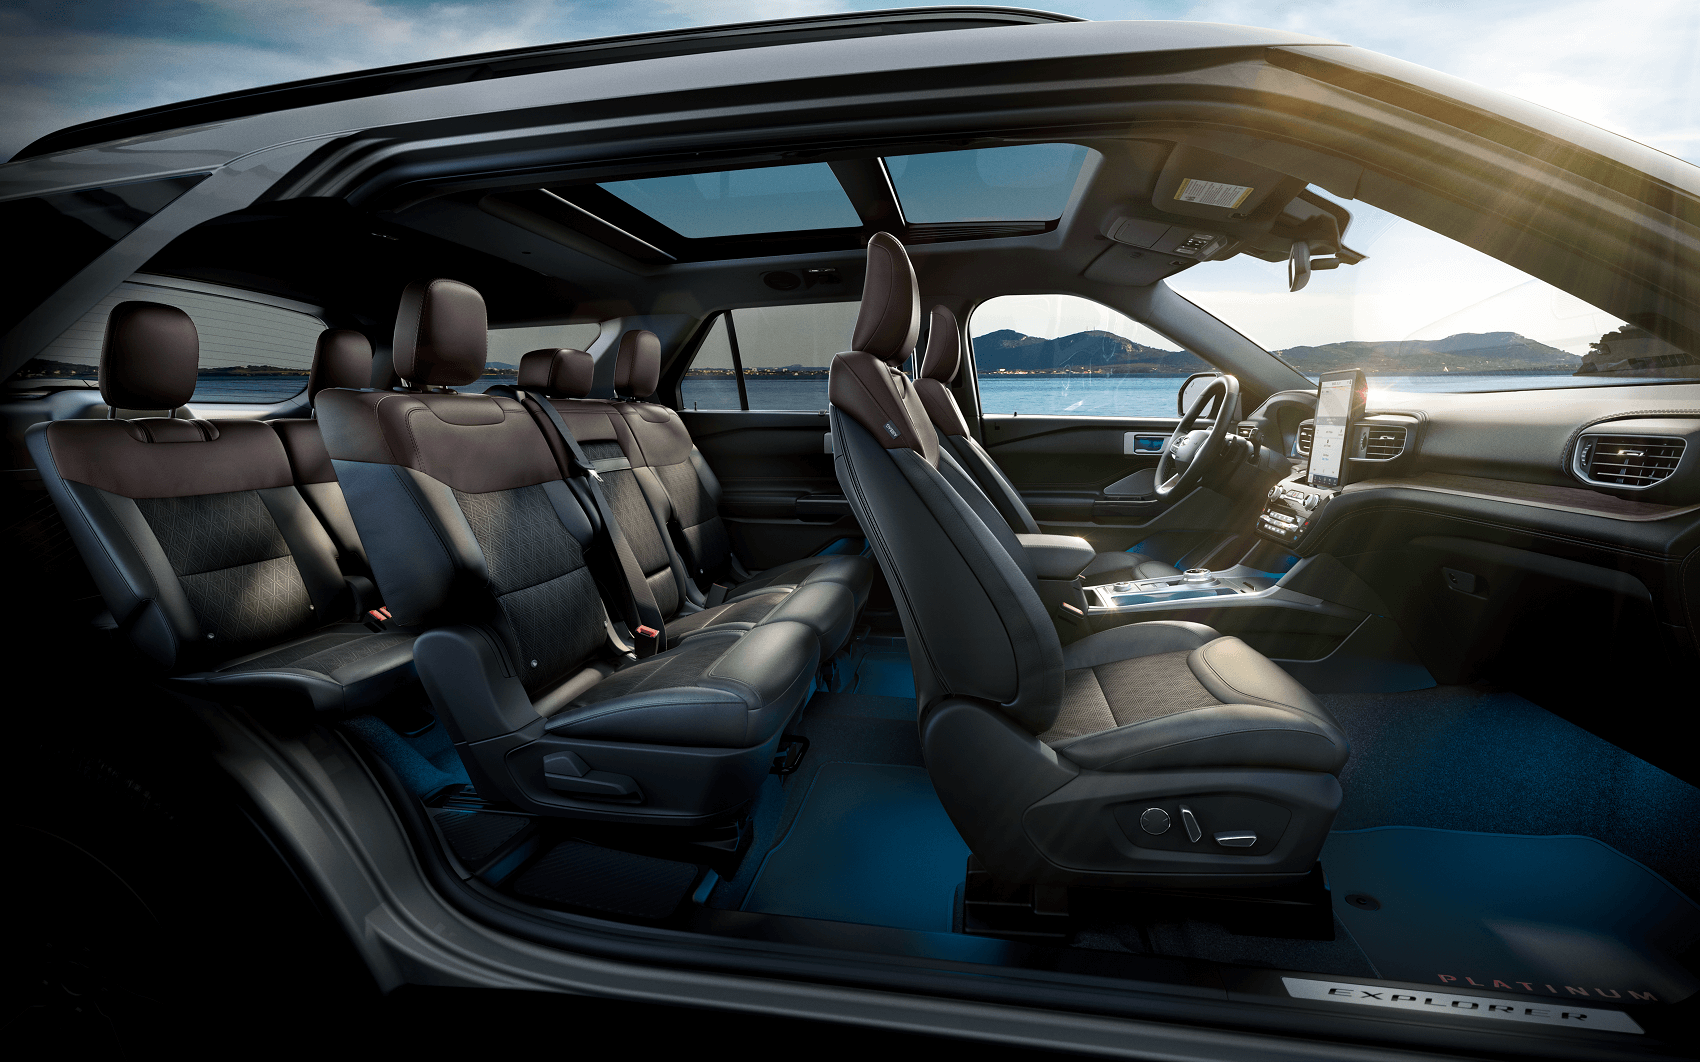 2021 Ford Explorer Interior Review
